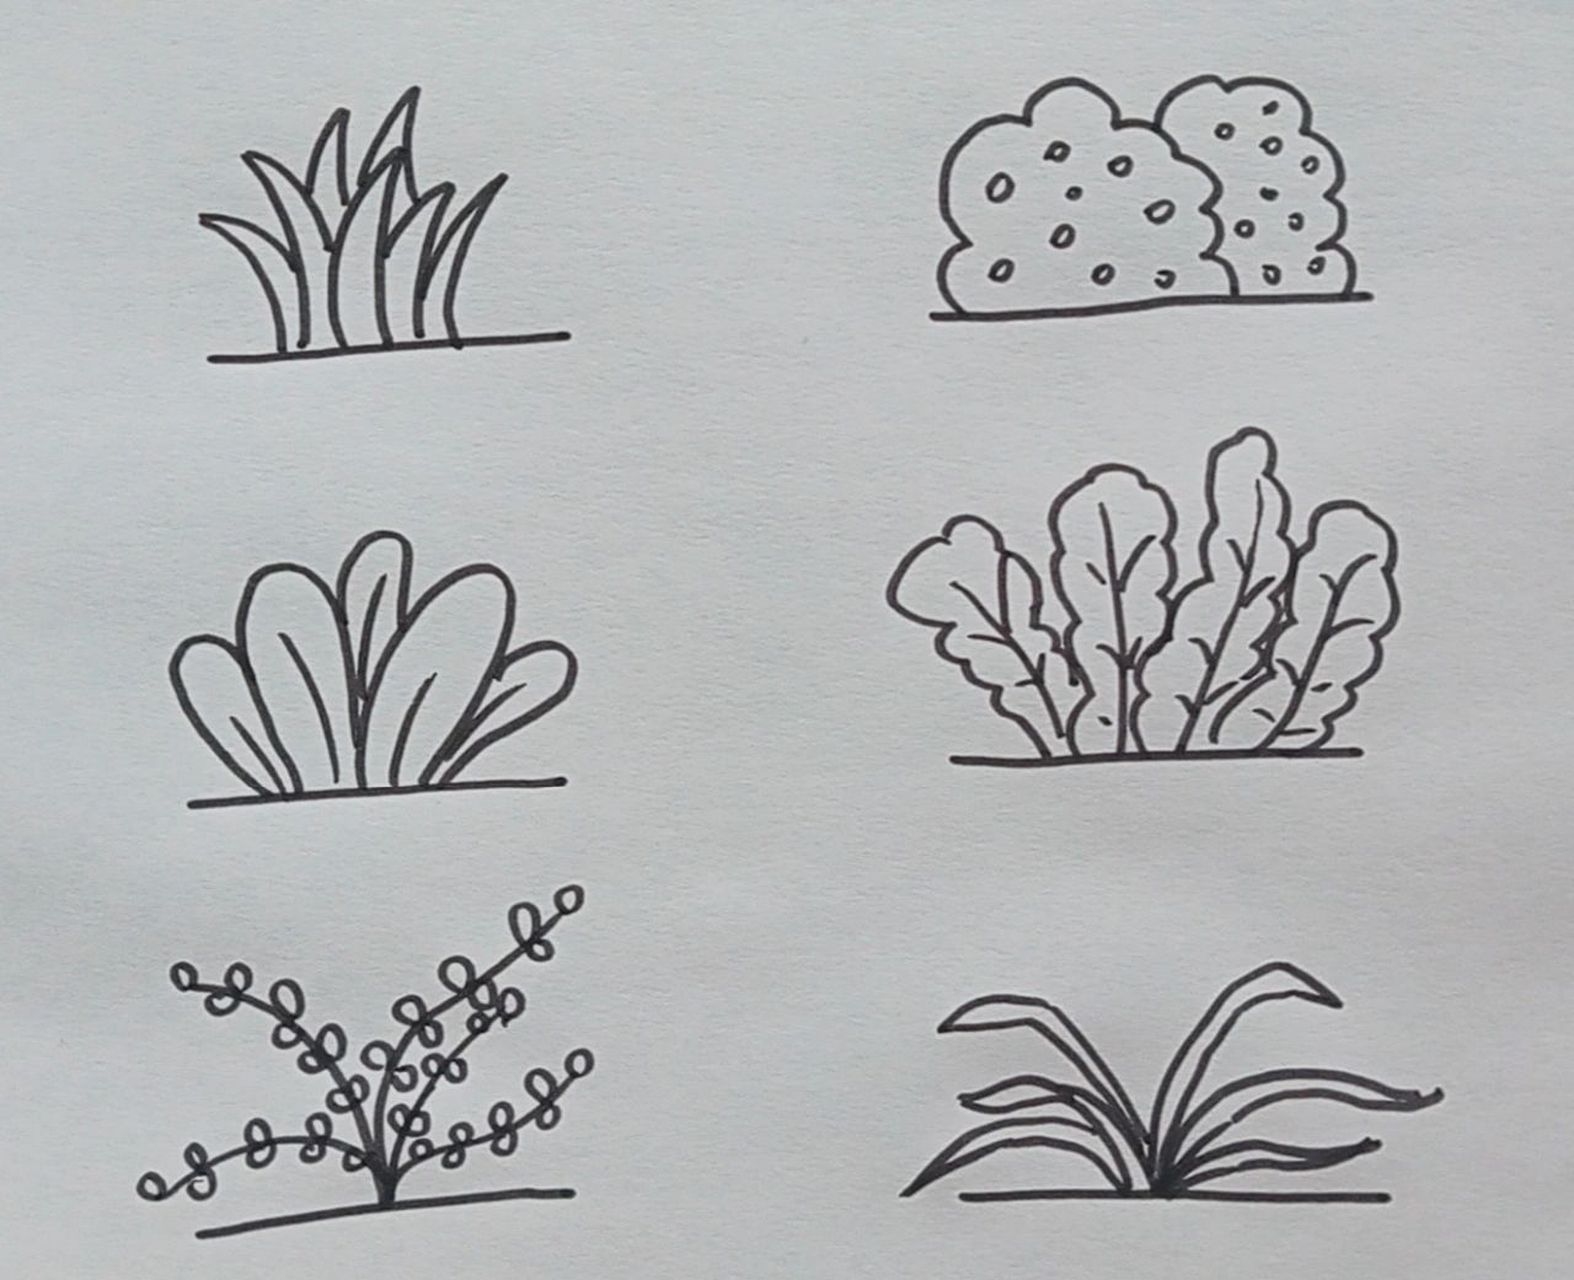 六种小草的简单画法 春天随处可见的小草,你有认真观察过它们的形状吗